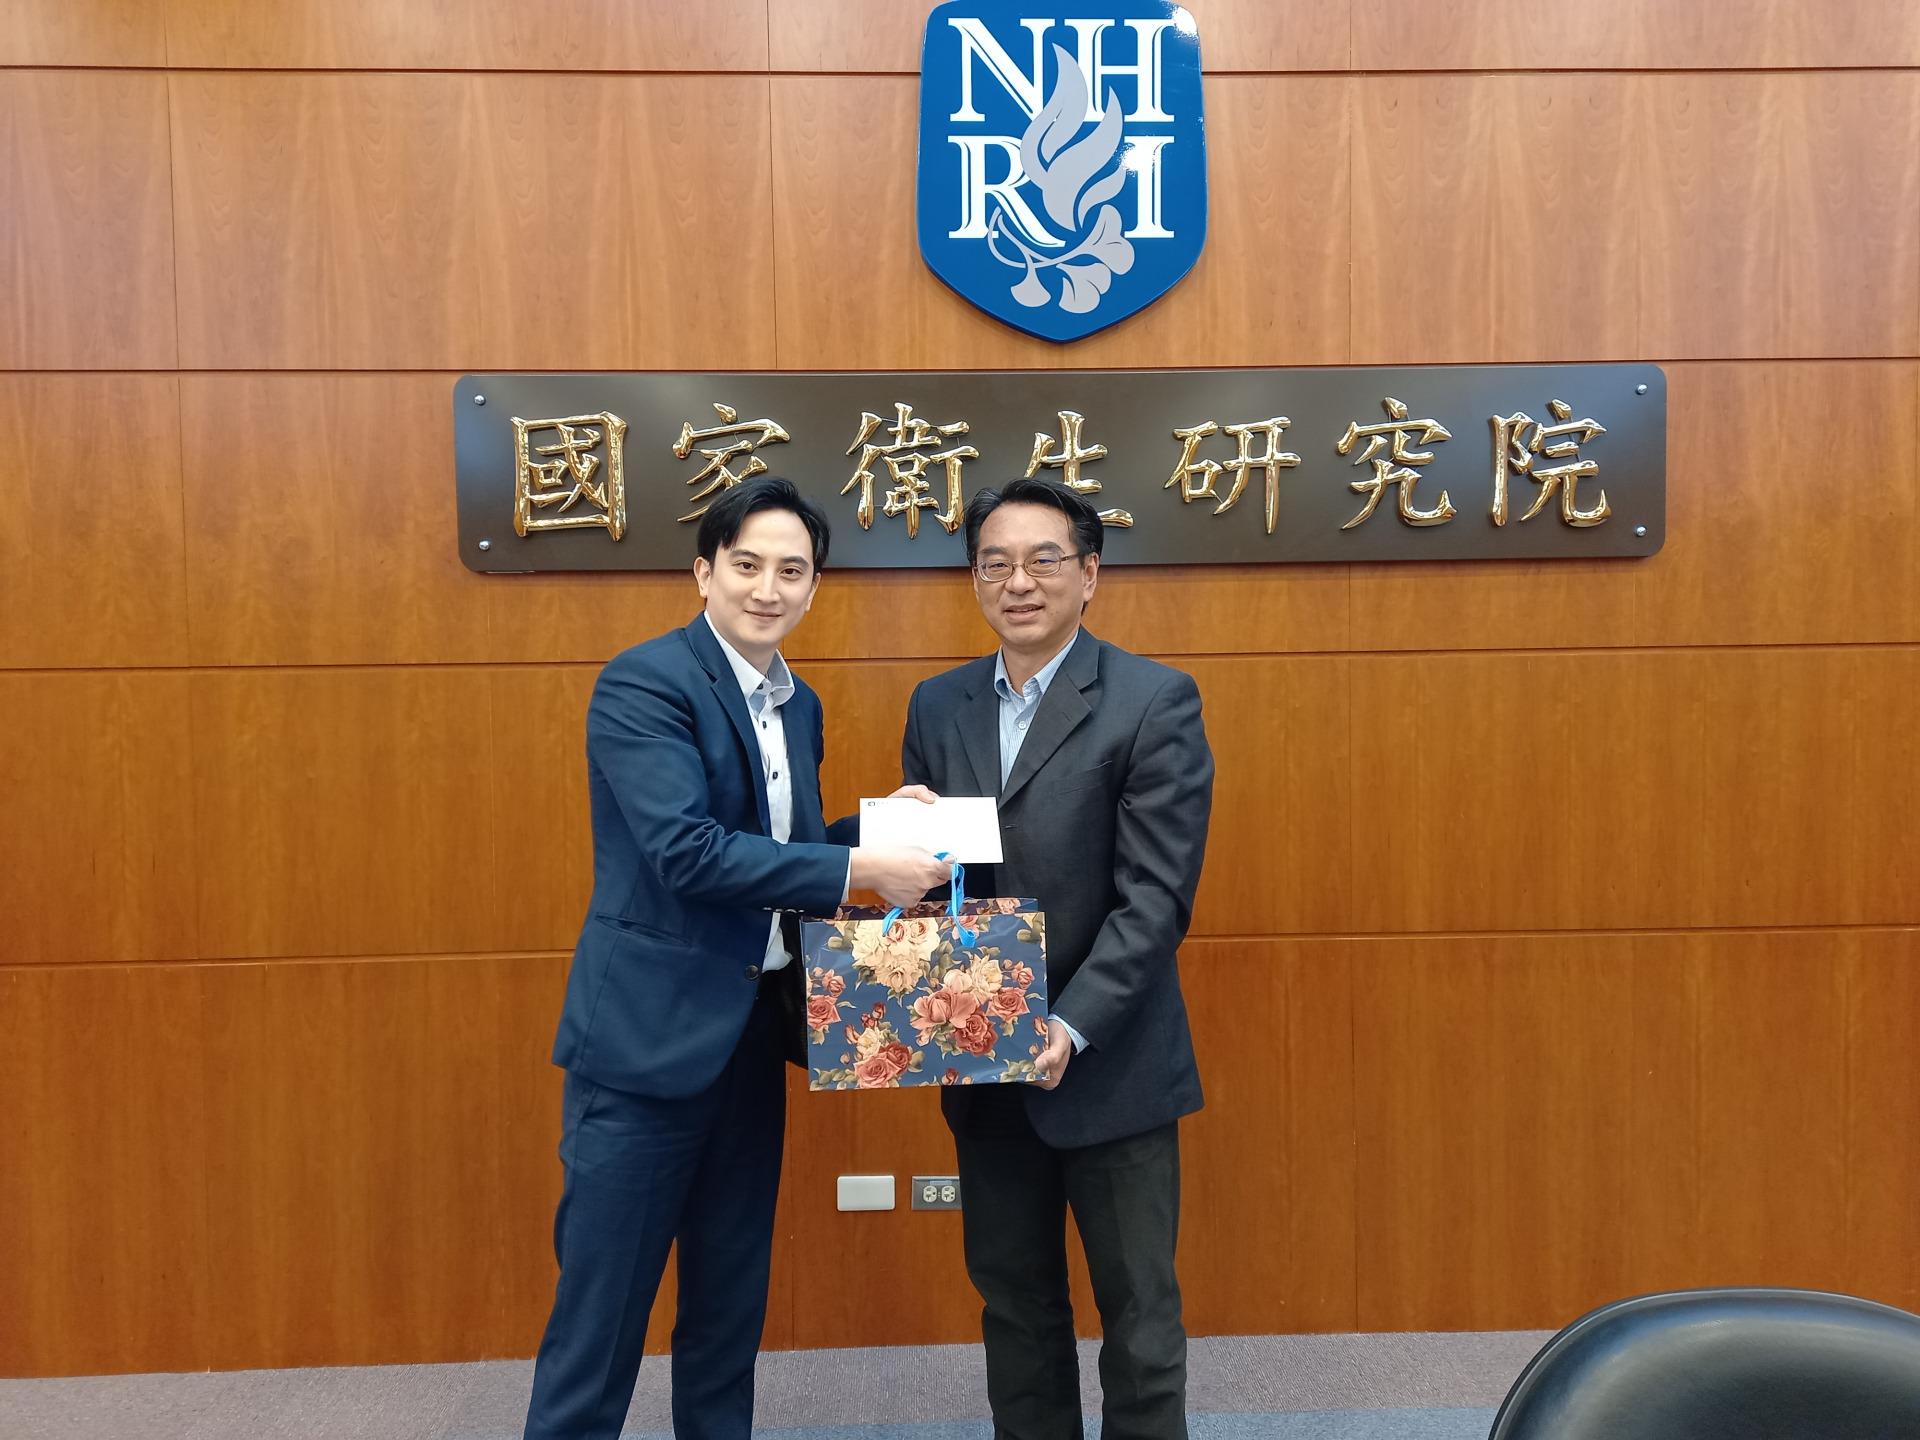 【活動資訊】NHRI mRNA Technology Journal Club